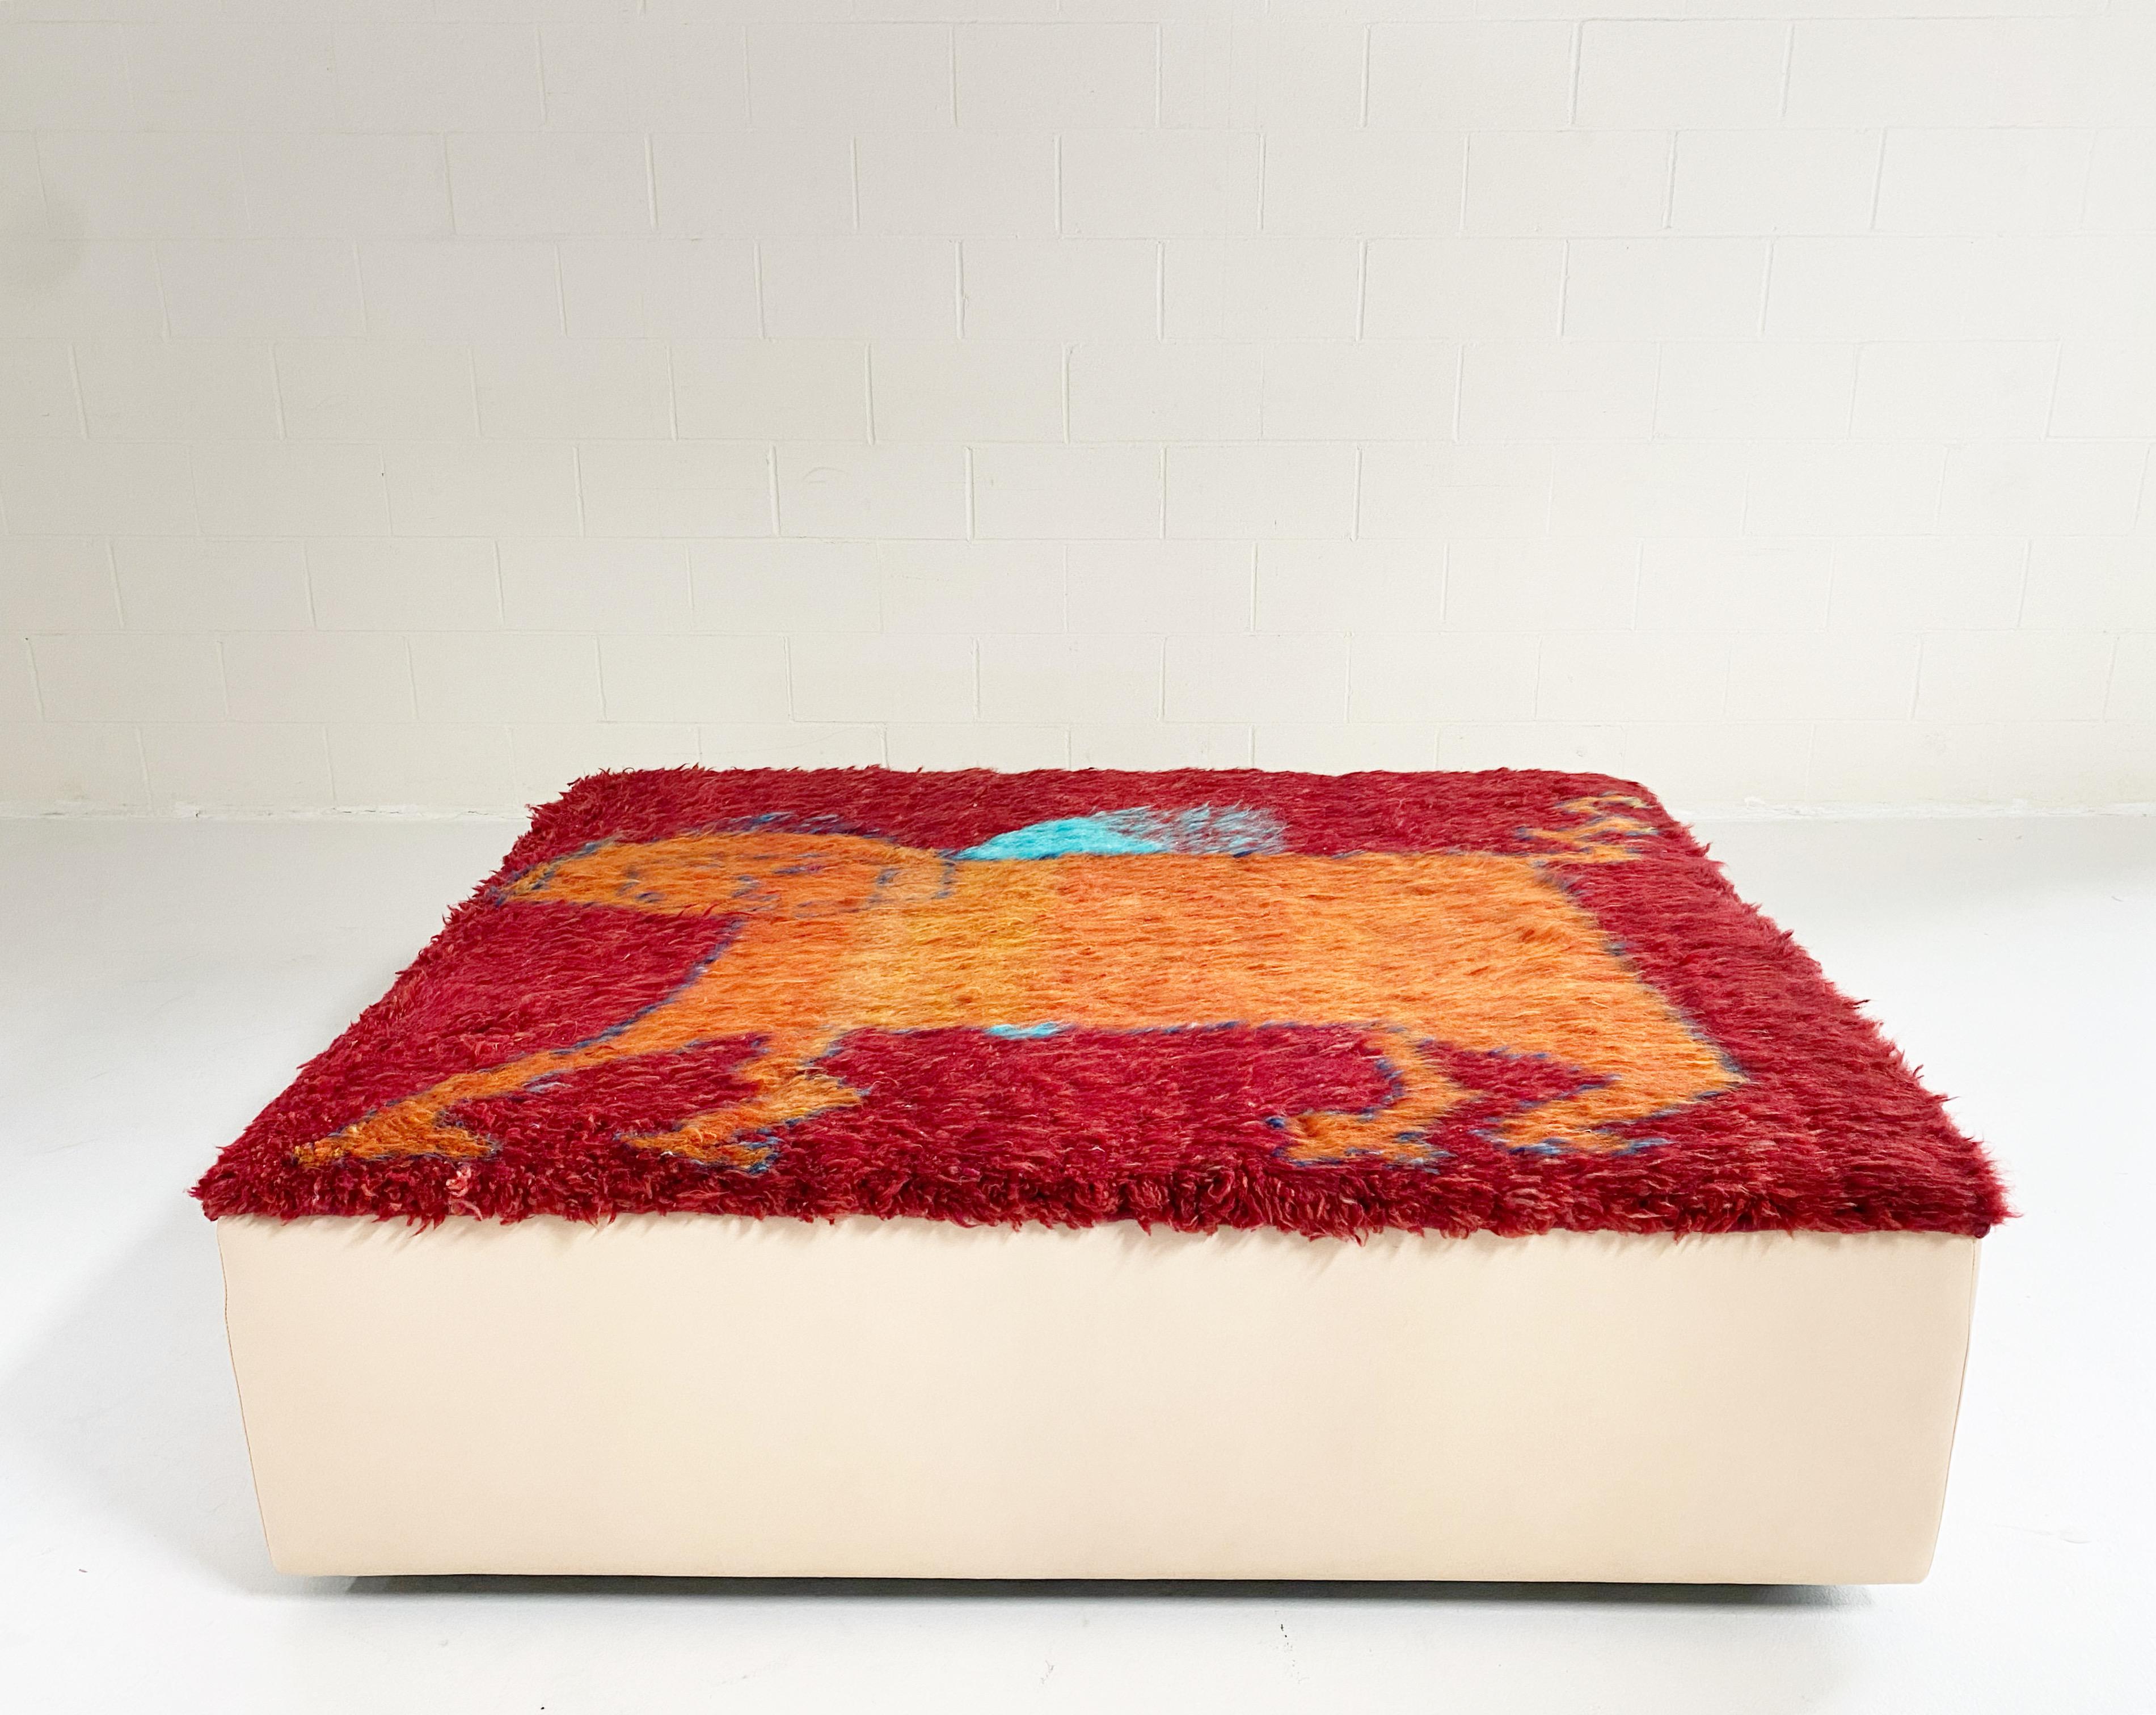 Un ottoman unique en son genre, conçu par FORSYTH et magnifiquement réalisé à la main à partir d'un tapis iranien gabbeh vintage (100 % laine de mouton filée à la main). Le tapis est fini avec des côtés en cuir luxueux tanné au végétal. La table